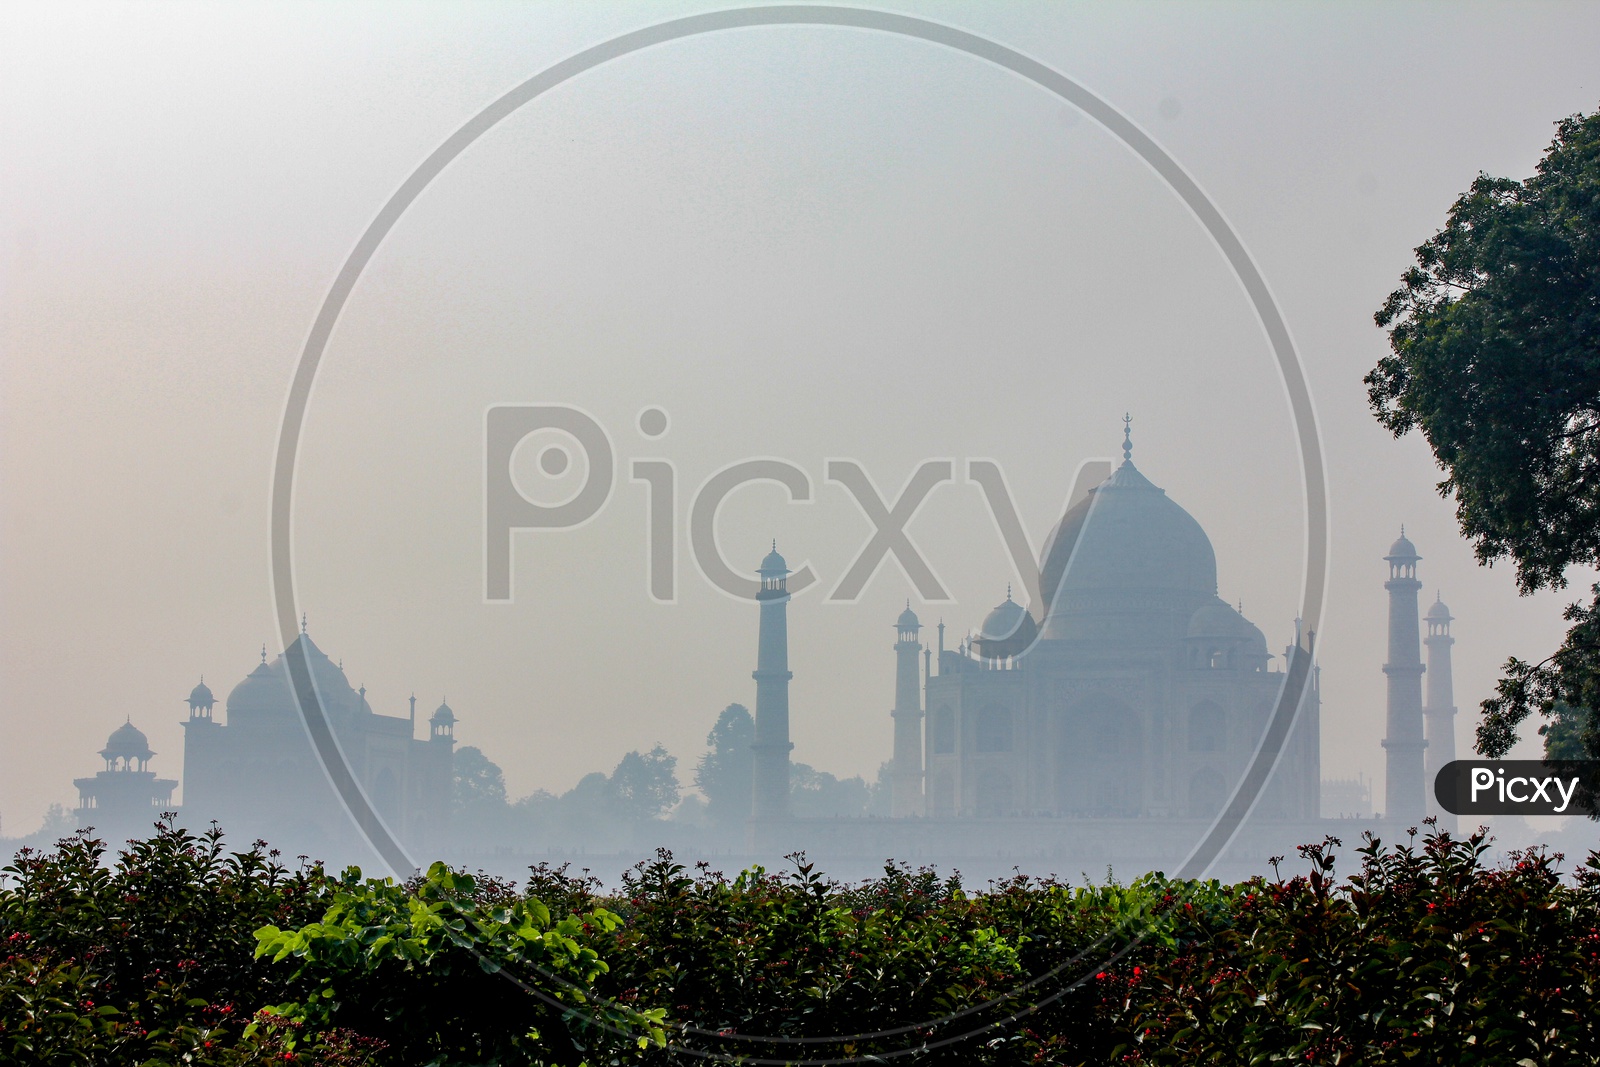 Beautiful Landscape of Taj Mahal